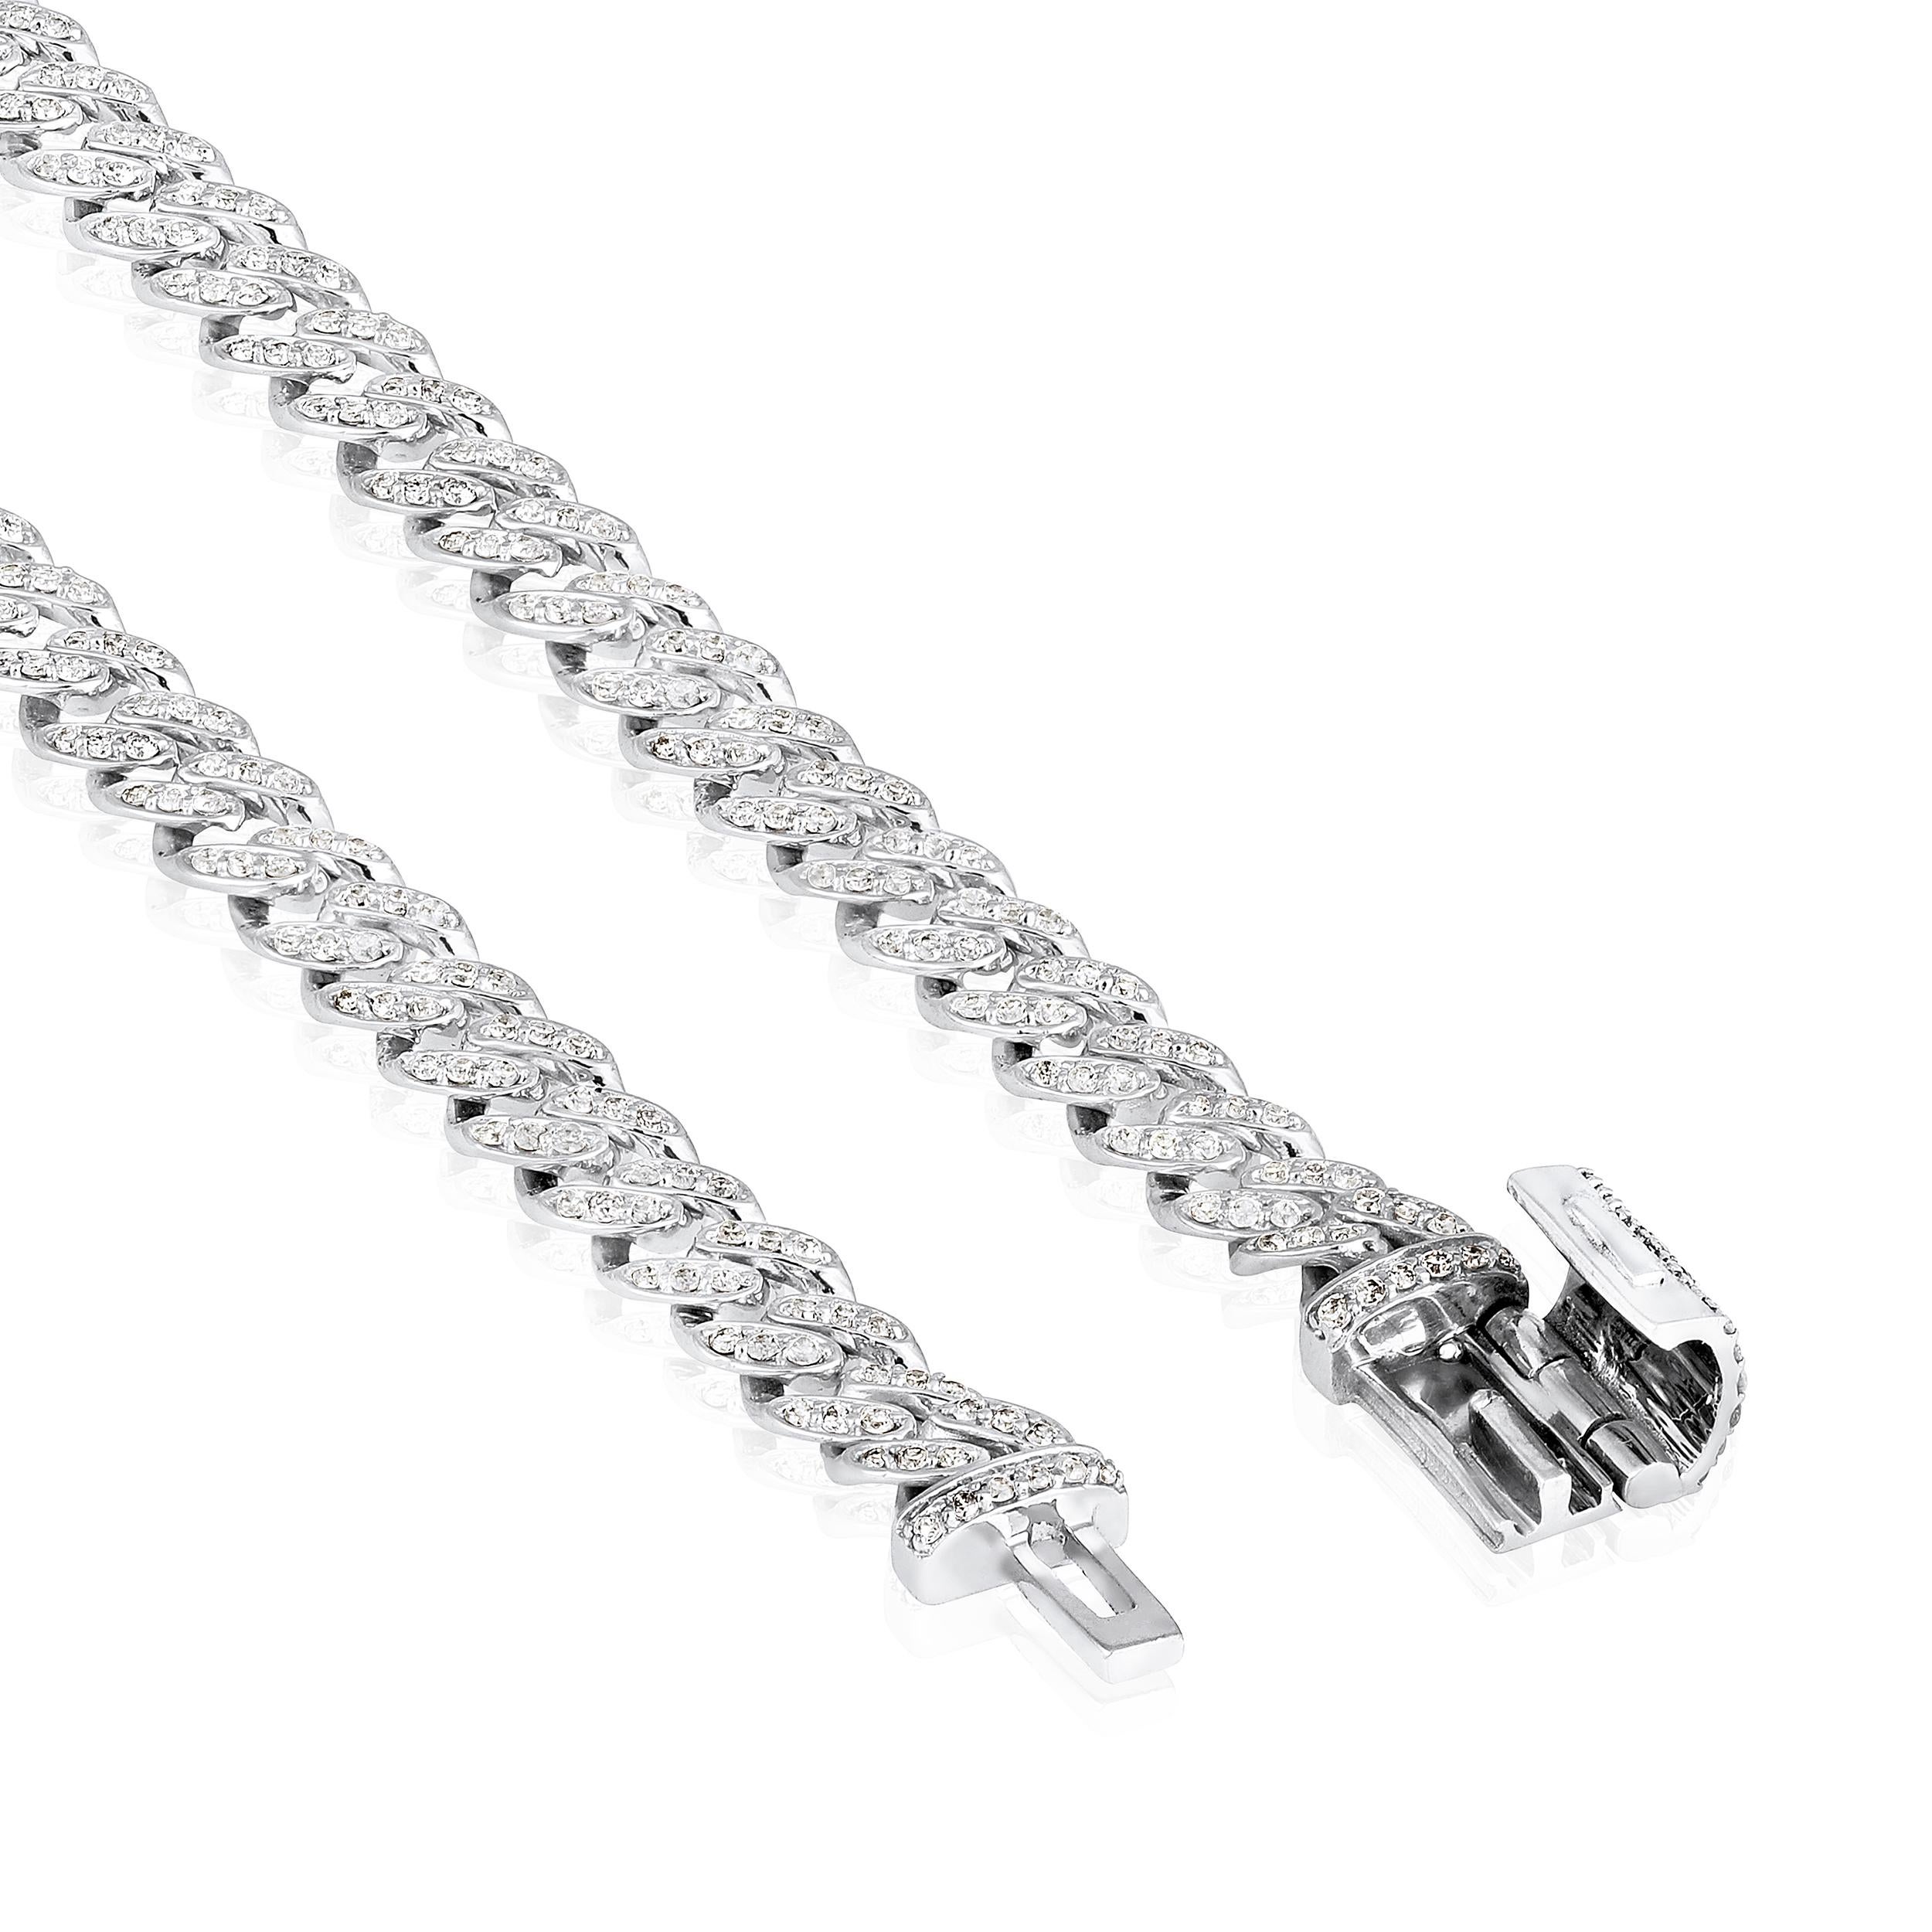 Fabriqué en or blanc 10K de 5,77 grammes, le bracelet contient 432 pierres de diamants ronds d'un total de 0,82 carat de couleur F-G et de carat I1-I2. La longueur du bracelet est de 7 pouces.

Ce bijou sera confectionné par nos artisans qualifiés